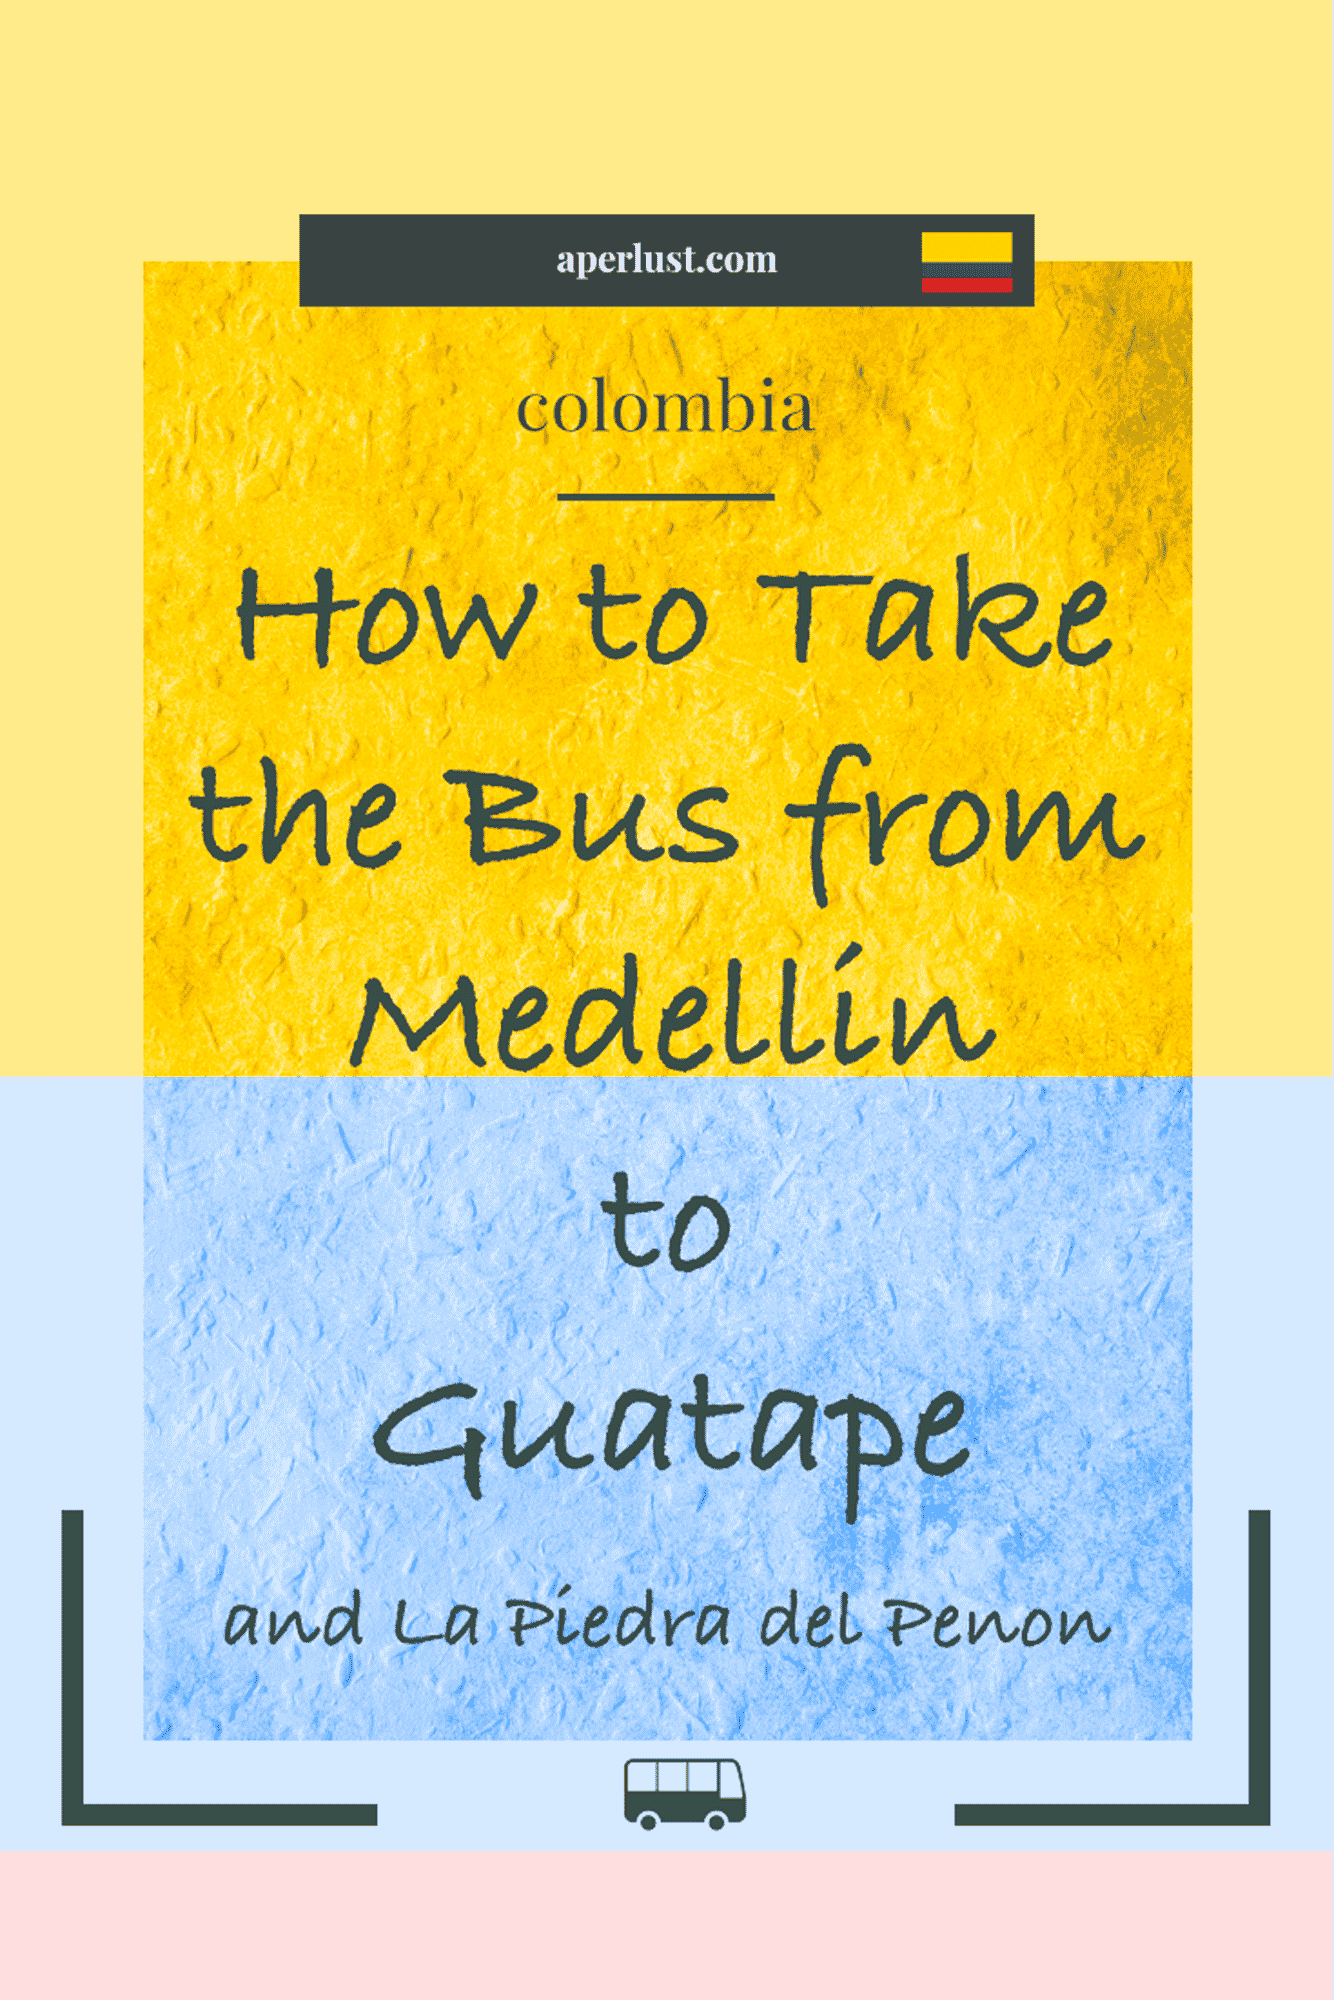 How to take the bus from Medellin to Guatape and La Piedra del Penon